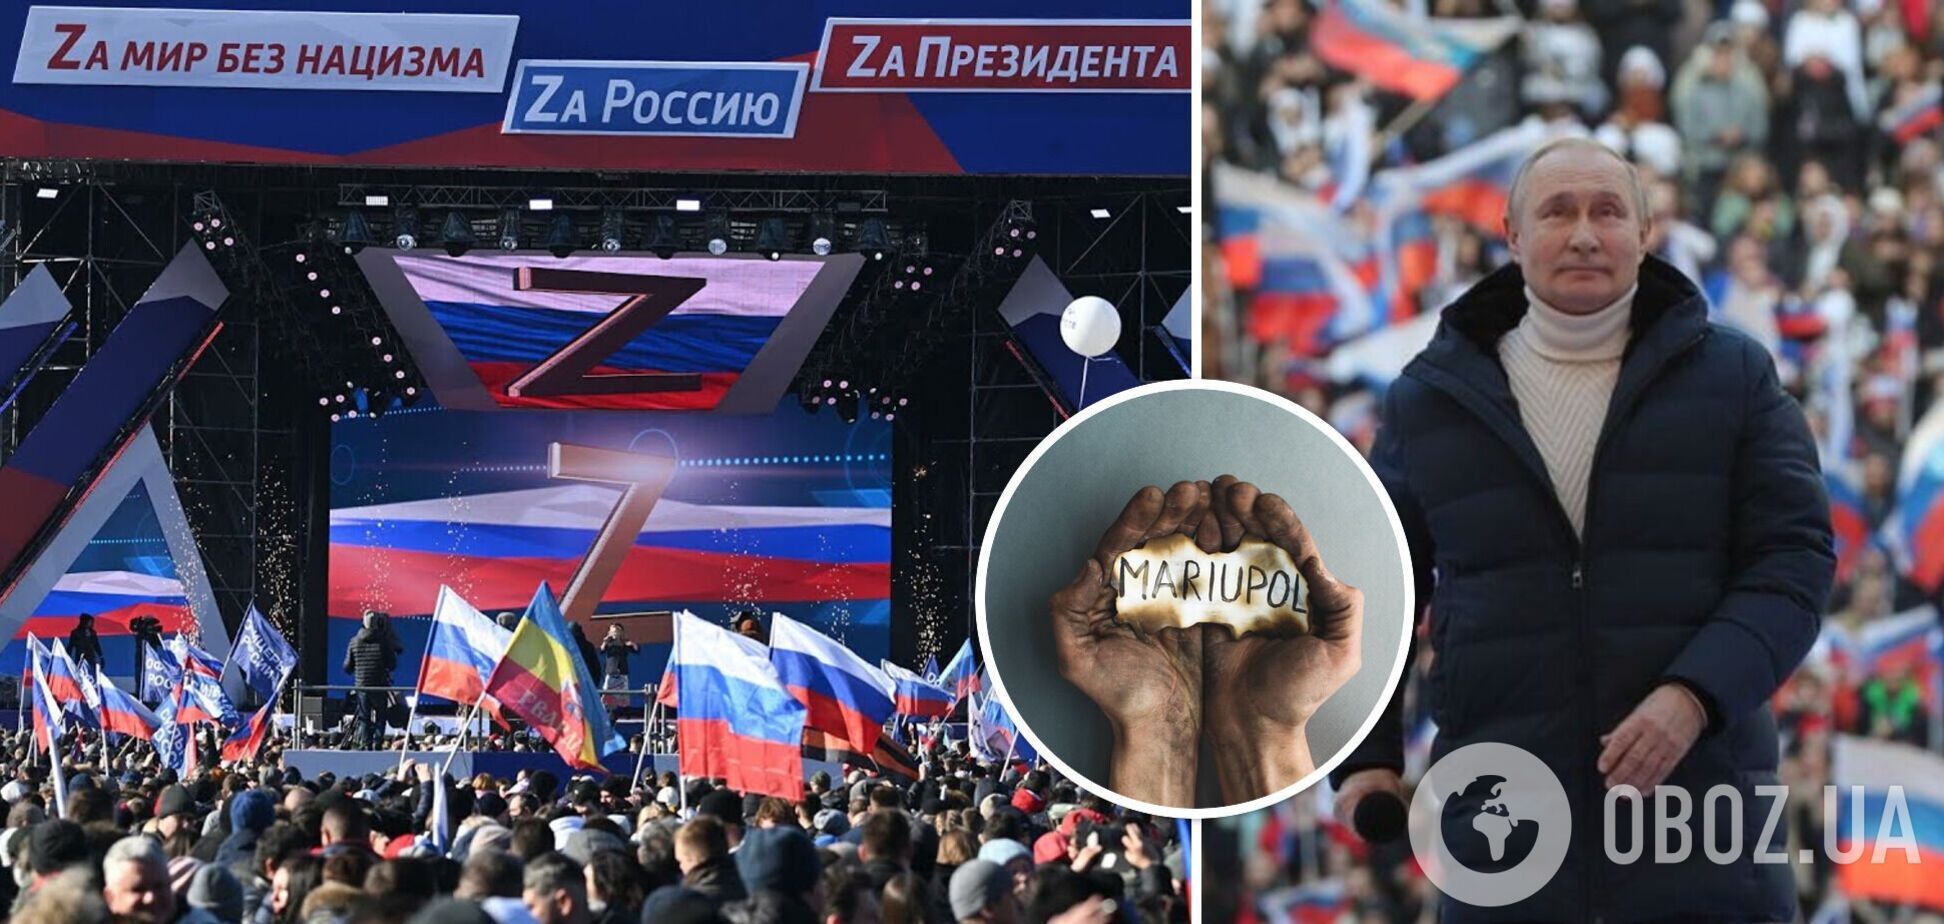 Верх цинізму: в 'Лужниках' перед виступом Путіна заспівали українською мовою про 'порятунок' Маріуполя від 'нацистів'